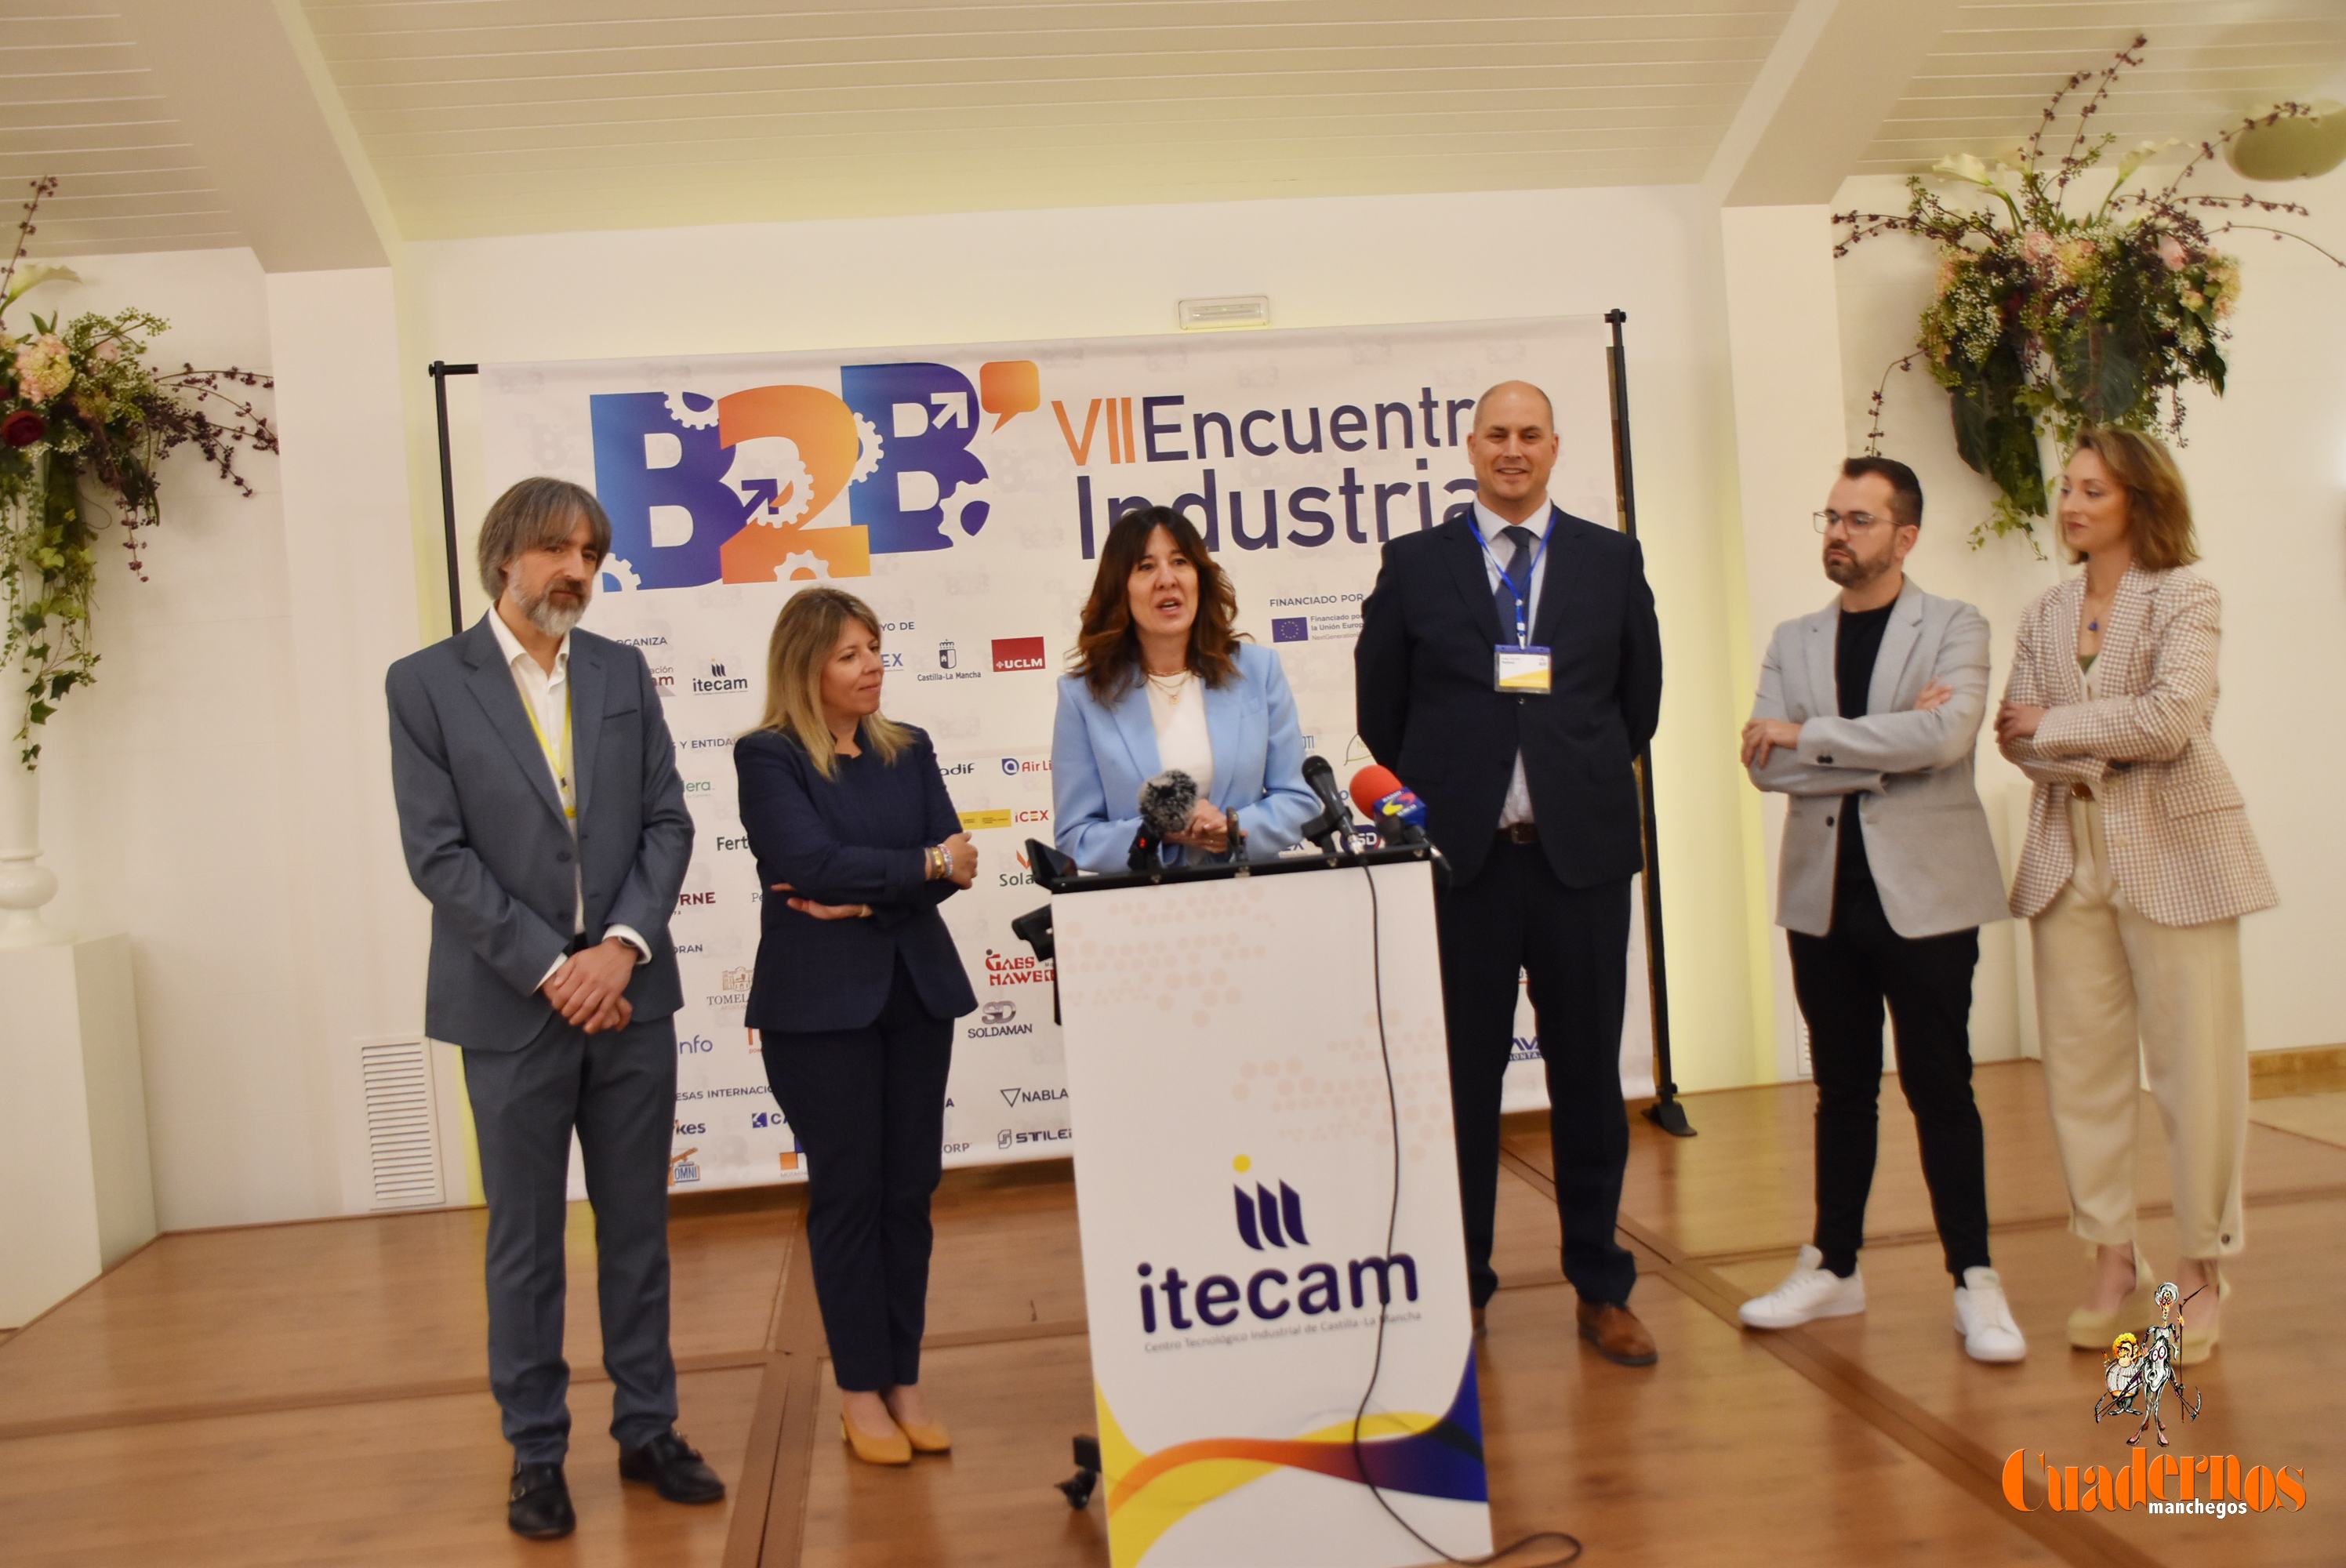 Blanca Fernández resalta el trabajo de ITECAM en la celebración hoy en Tomelloso del mayor encuentro industrial de Castilla-La Mancha 